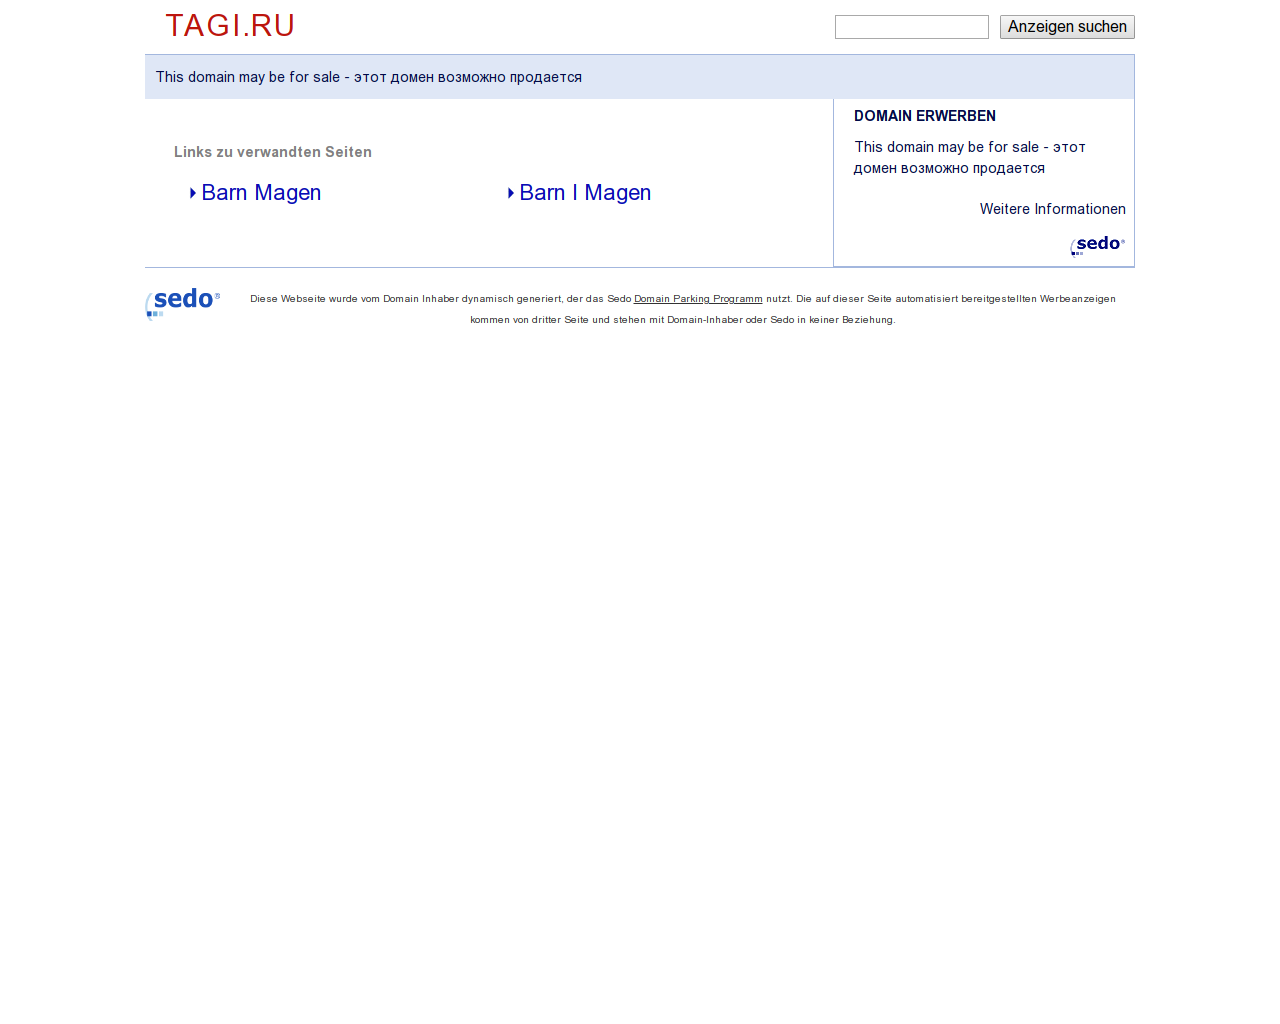 Изображение сайта tagi.ru в разрешении 1280x1024